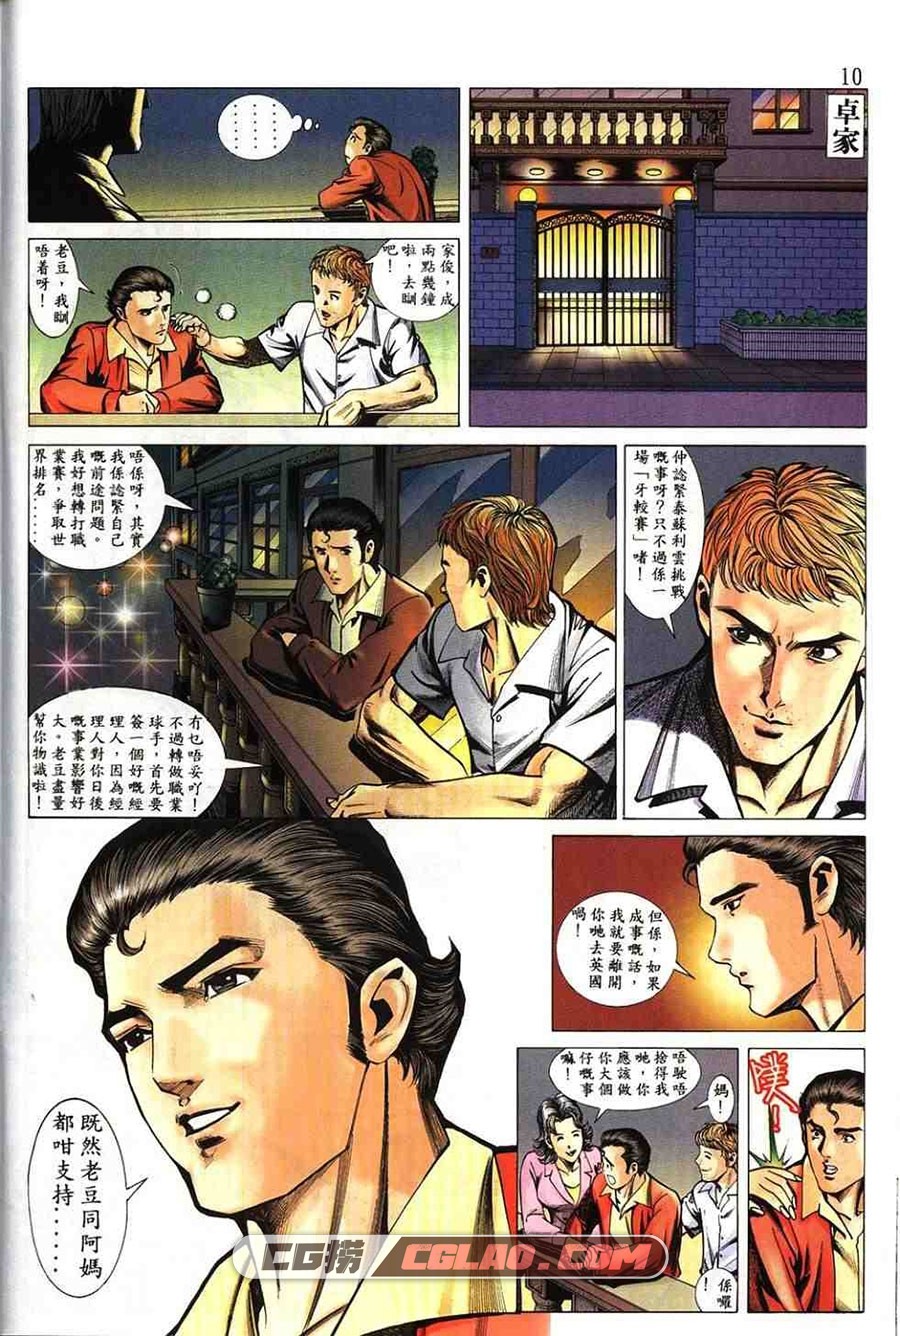 桌球王第二部 上官小宝 1-20册 竞技漫画全集下载 百度网盘,0011.jpg